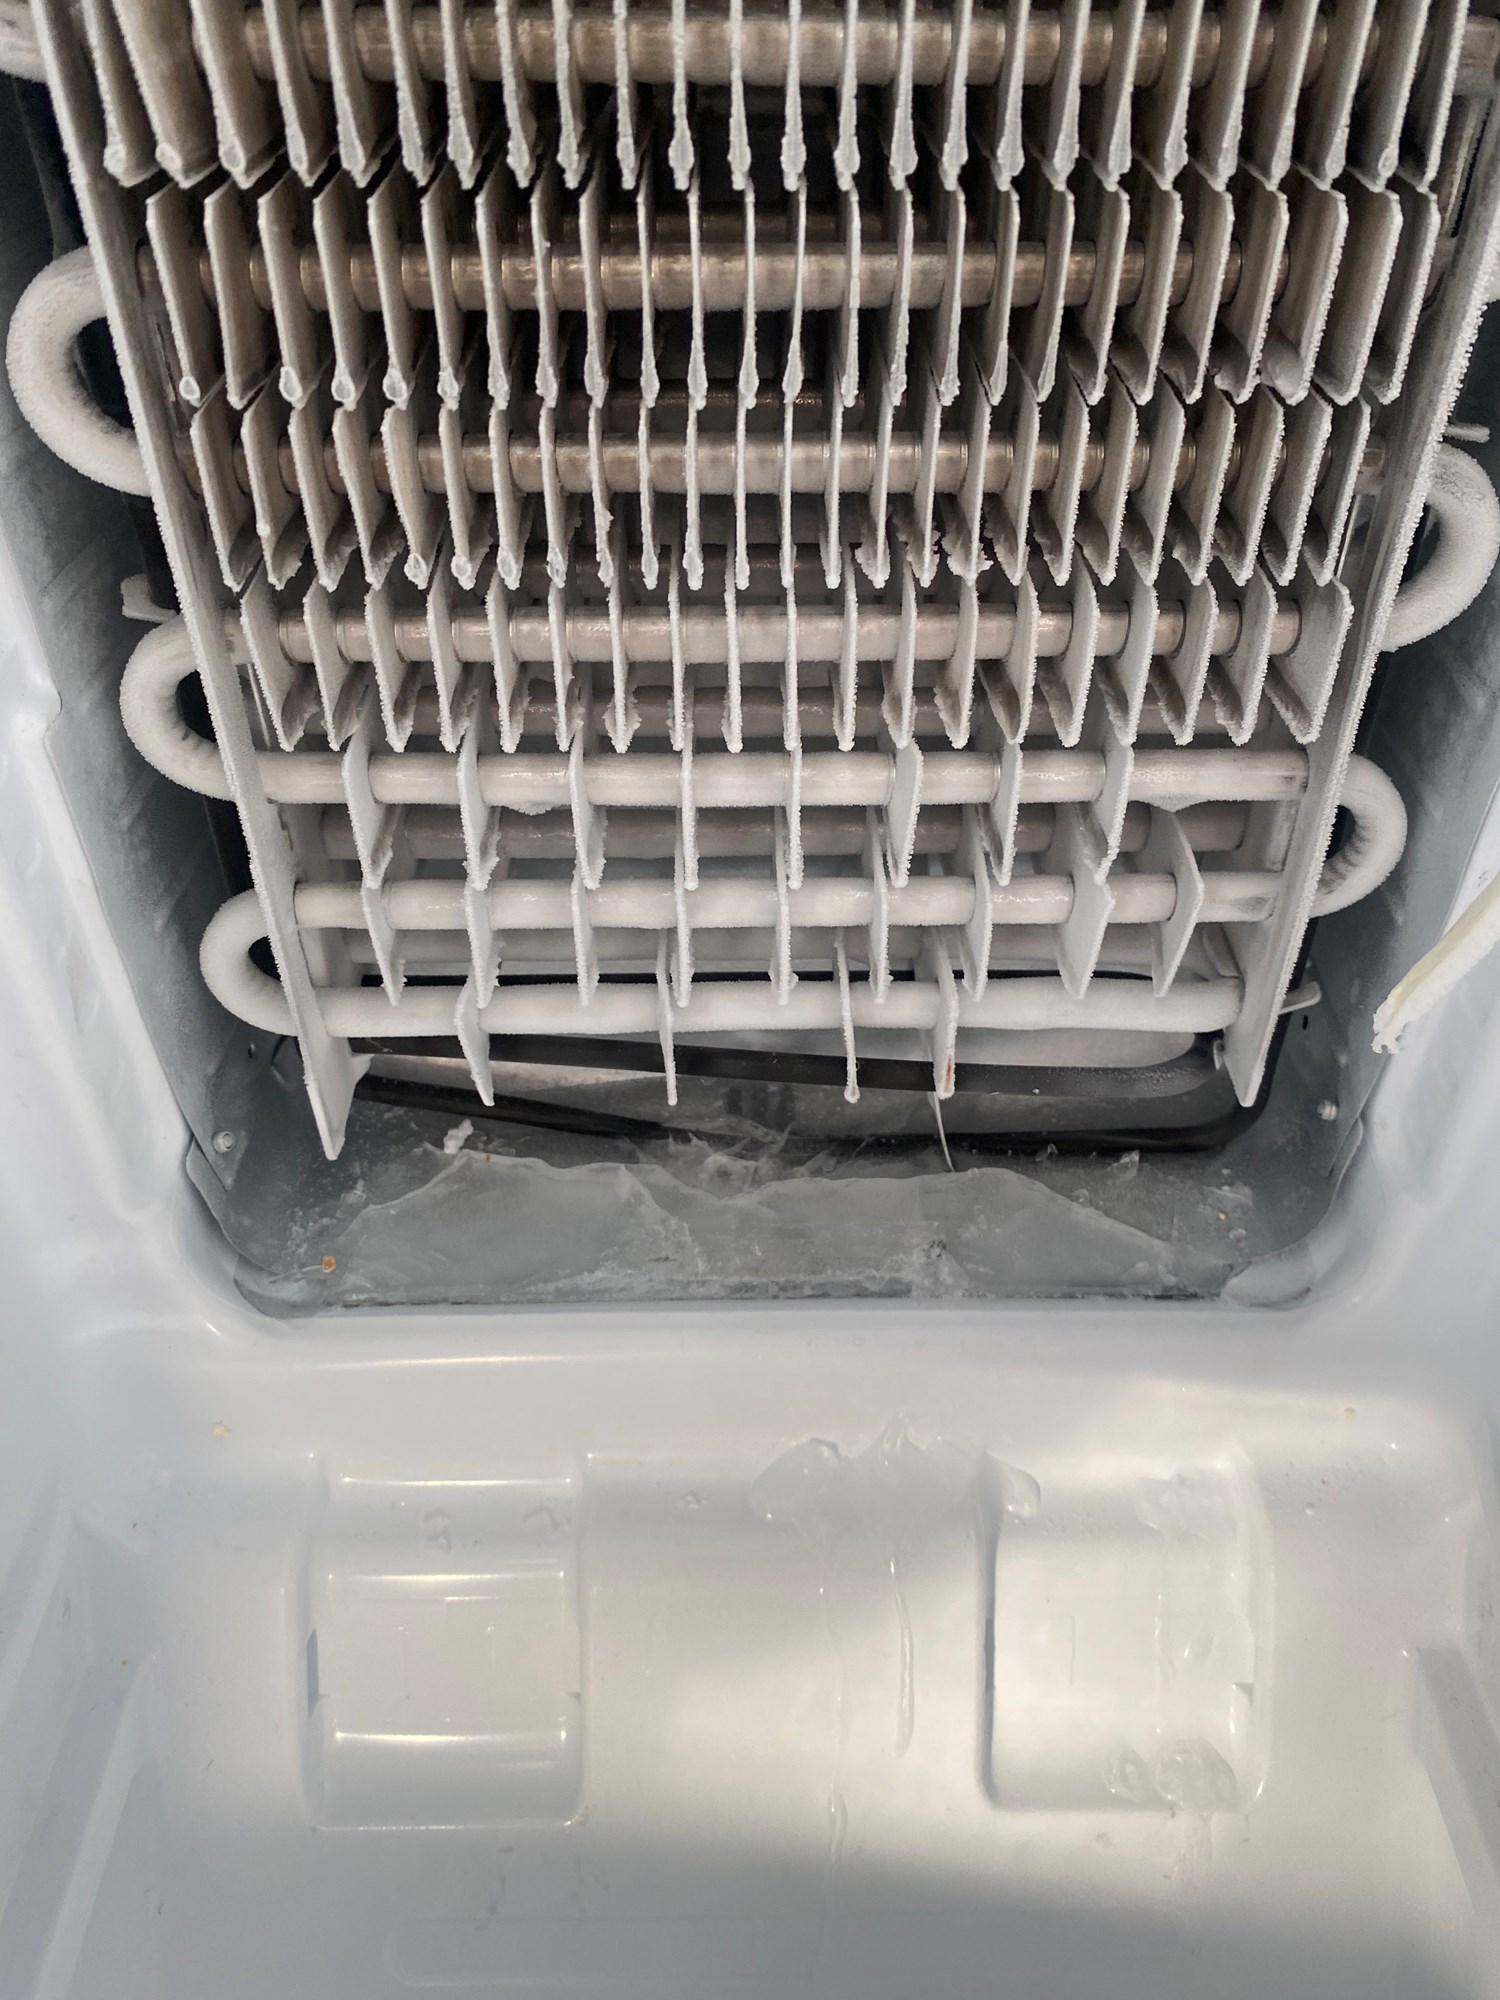 Side by side kjøleskap lekker i fryseren - 0E7391FE-E9E2-4476-932F-B41D5151FF2E.jpeg - Stian_86